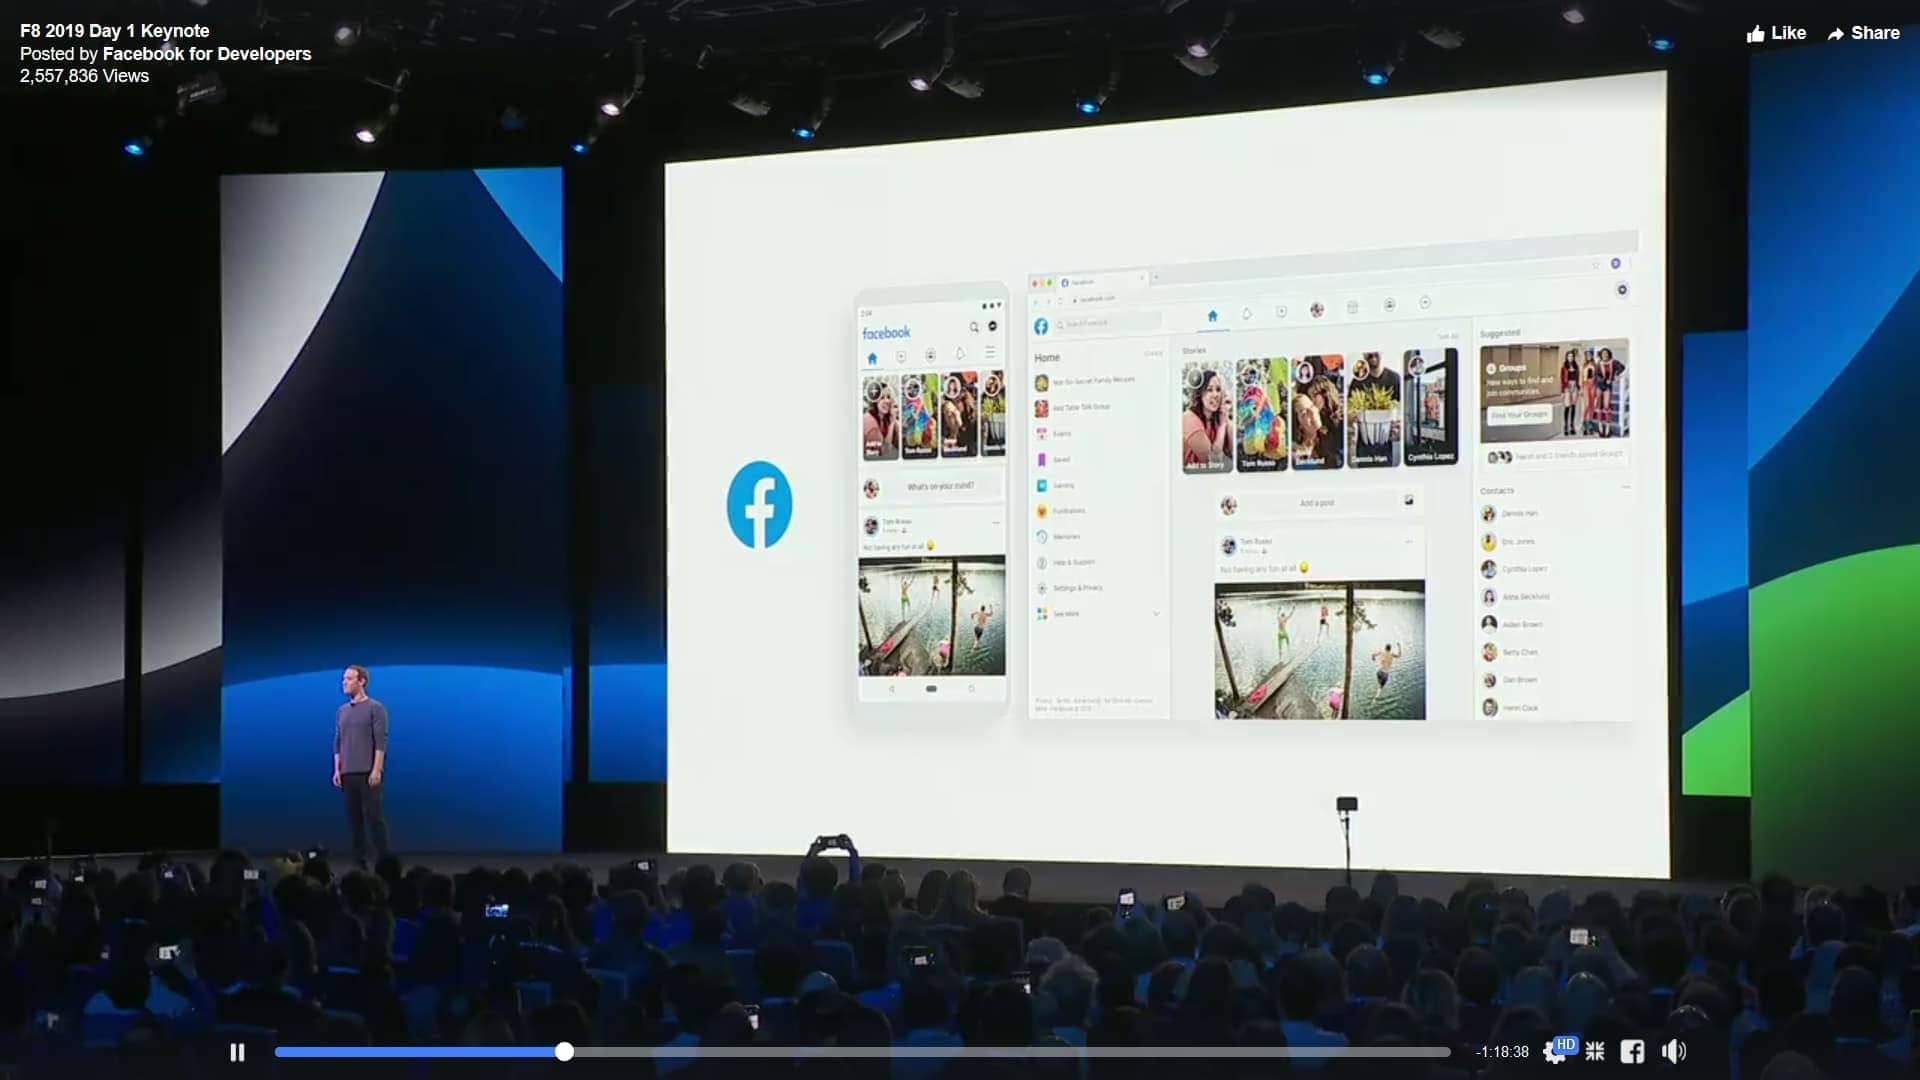 Facebook เตรียมปรับปรุงดีไซน์ครั้งใหญ่ สะอาดขึ้น เร็วขึ้น พร้อมออก Messenger เวอร์ชัน Desktop ทำงานได้ครบทุกฟีเจอร์ 11